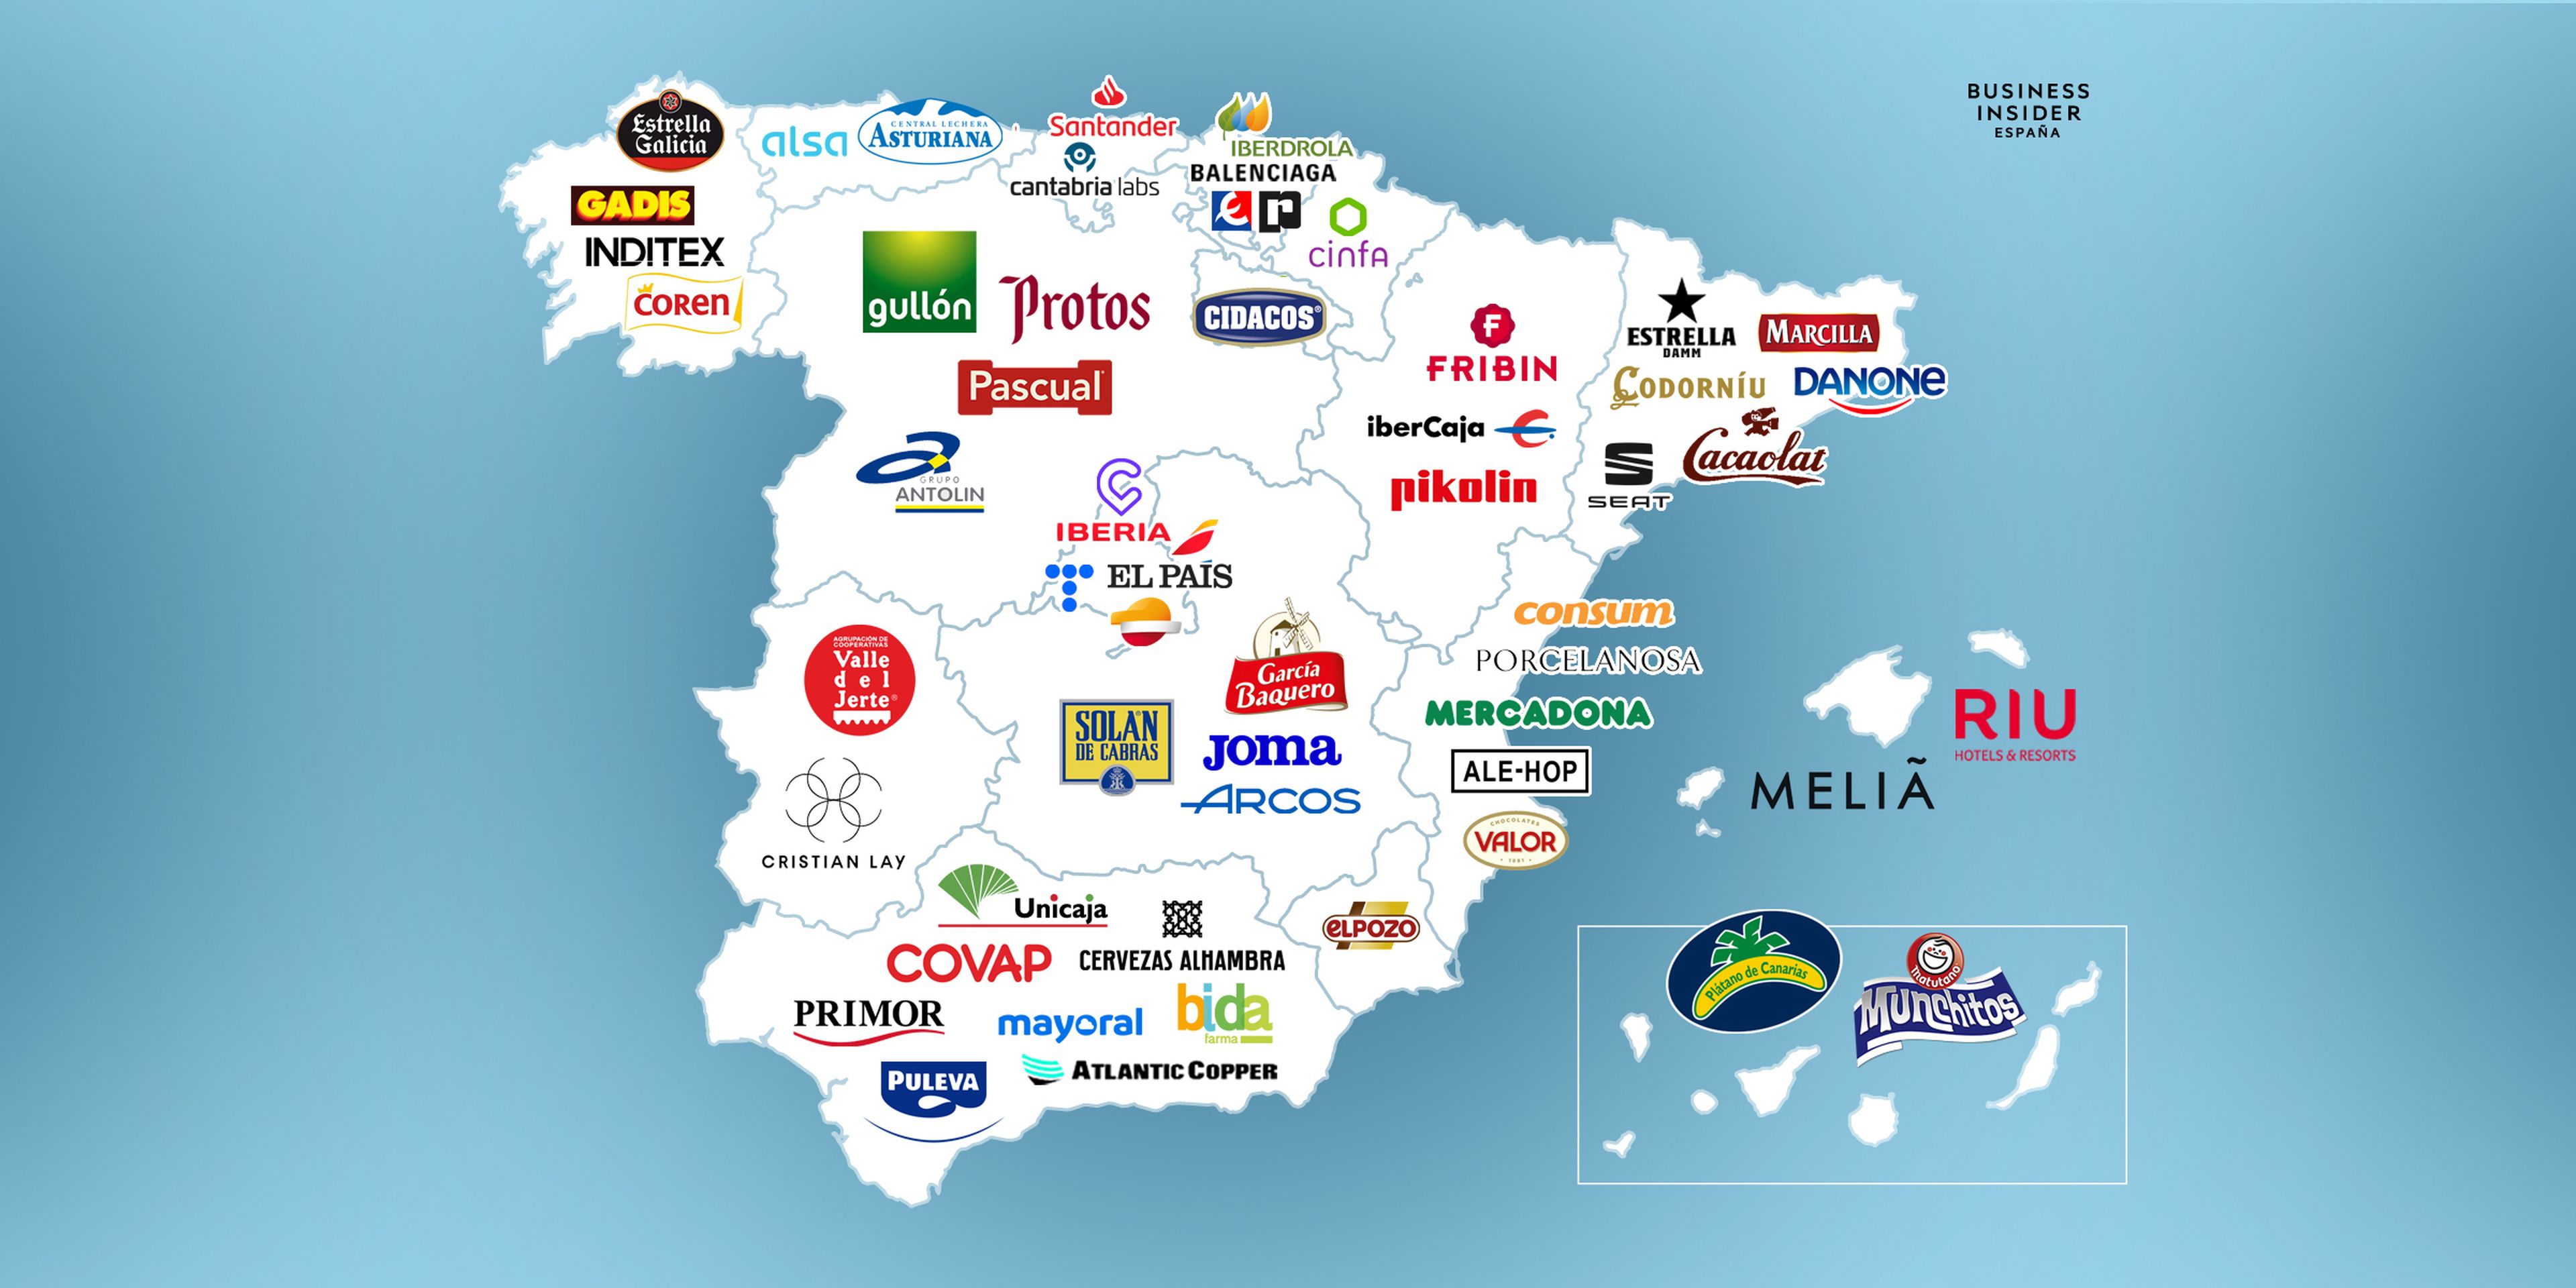 Mapa de las marcas más destacadas de cada región.